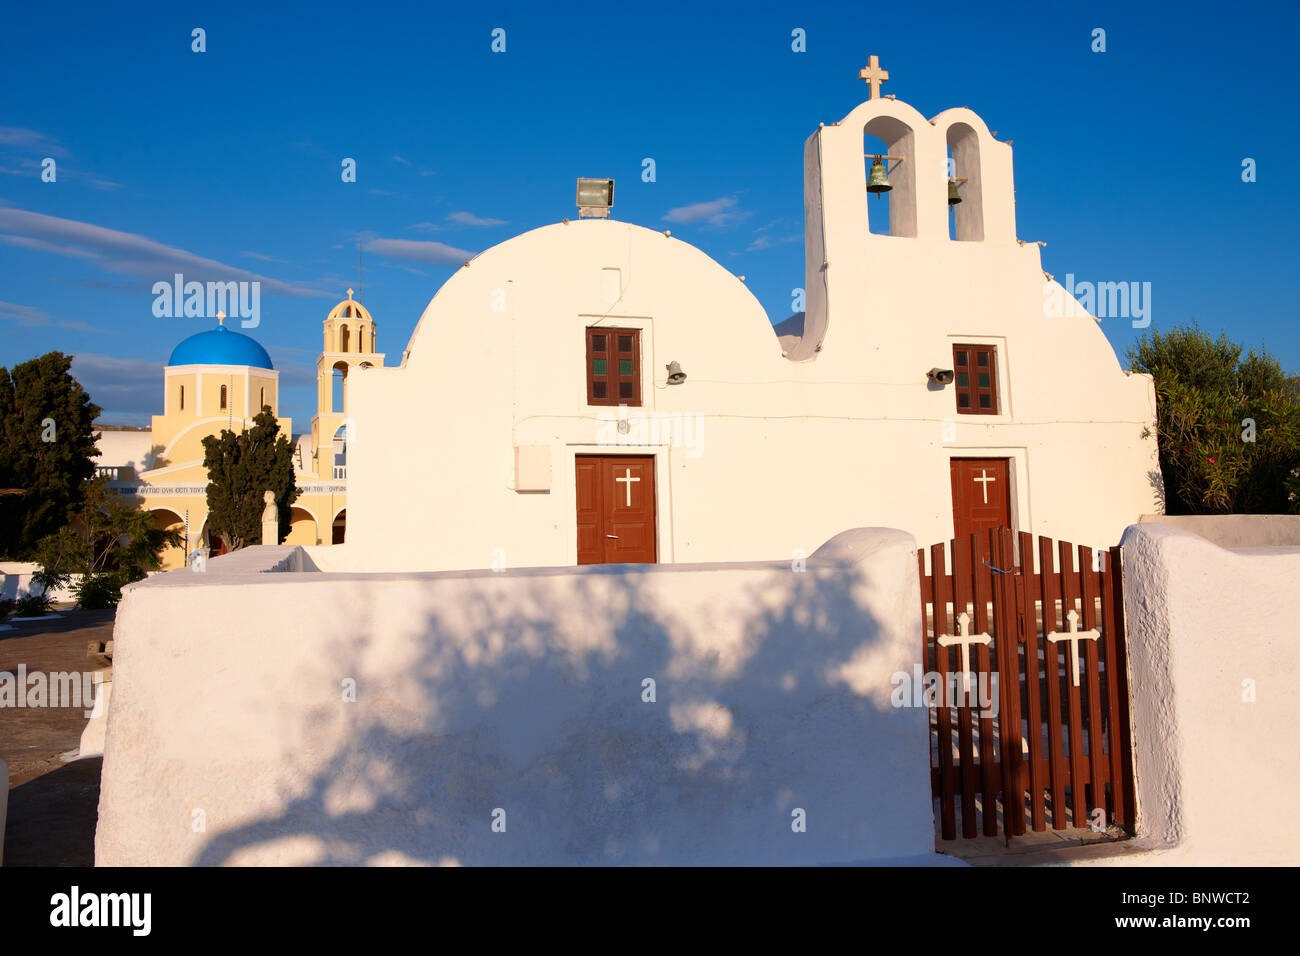 Oia (Ia) Santorini - byzantinischen Orthodax Kirchen, - griechischen Kykladen Inseln - Fotos und Bilder Stockfoto